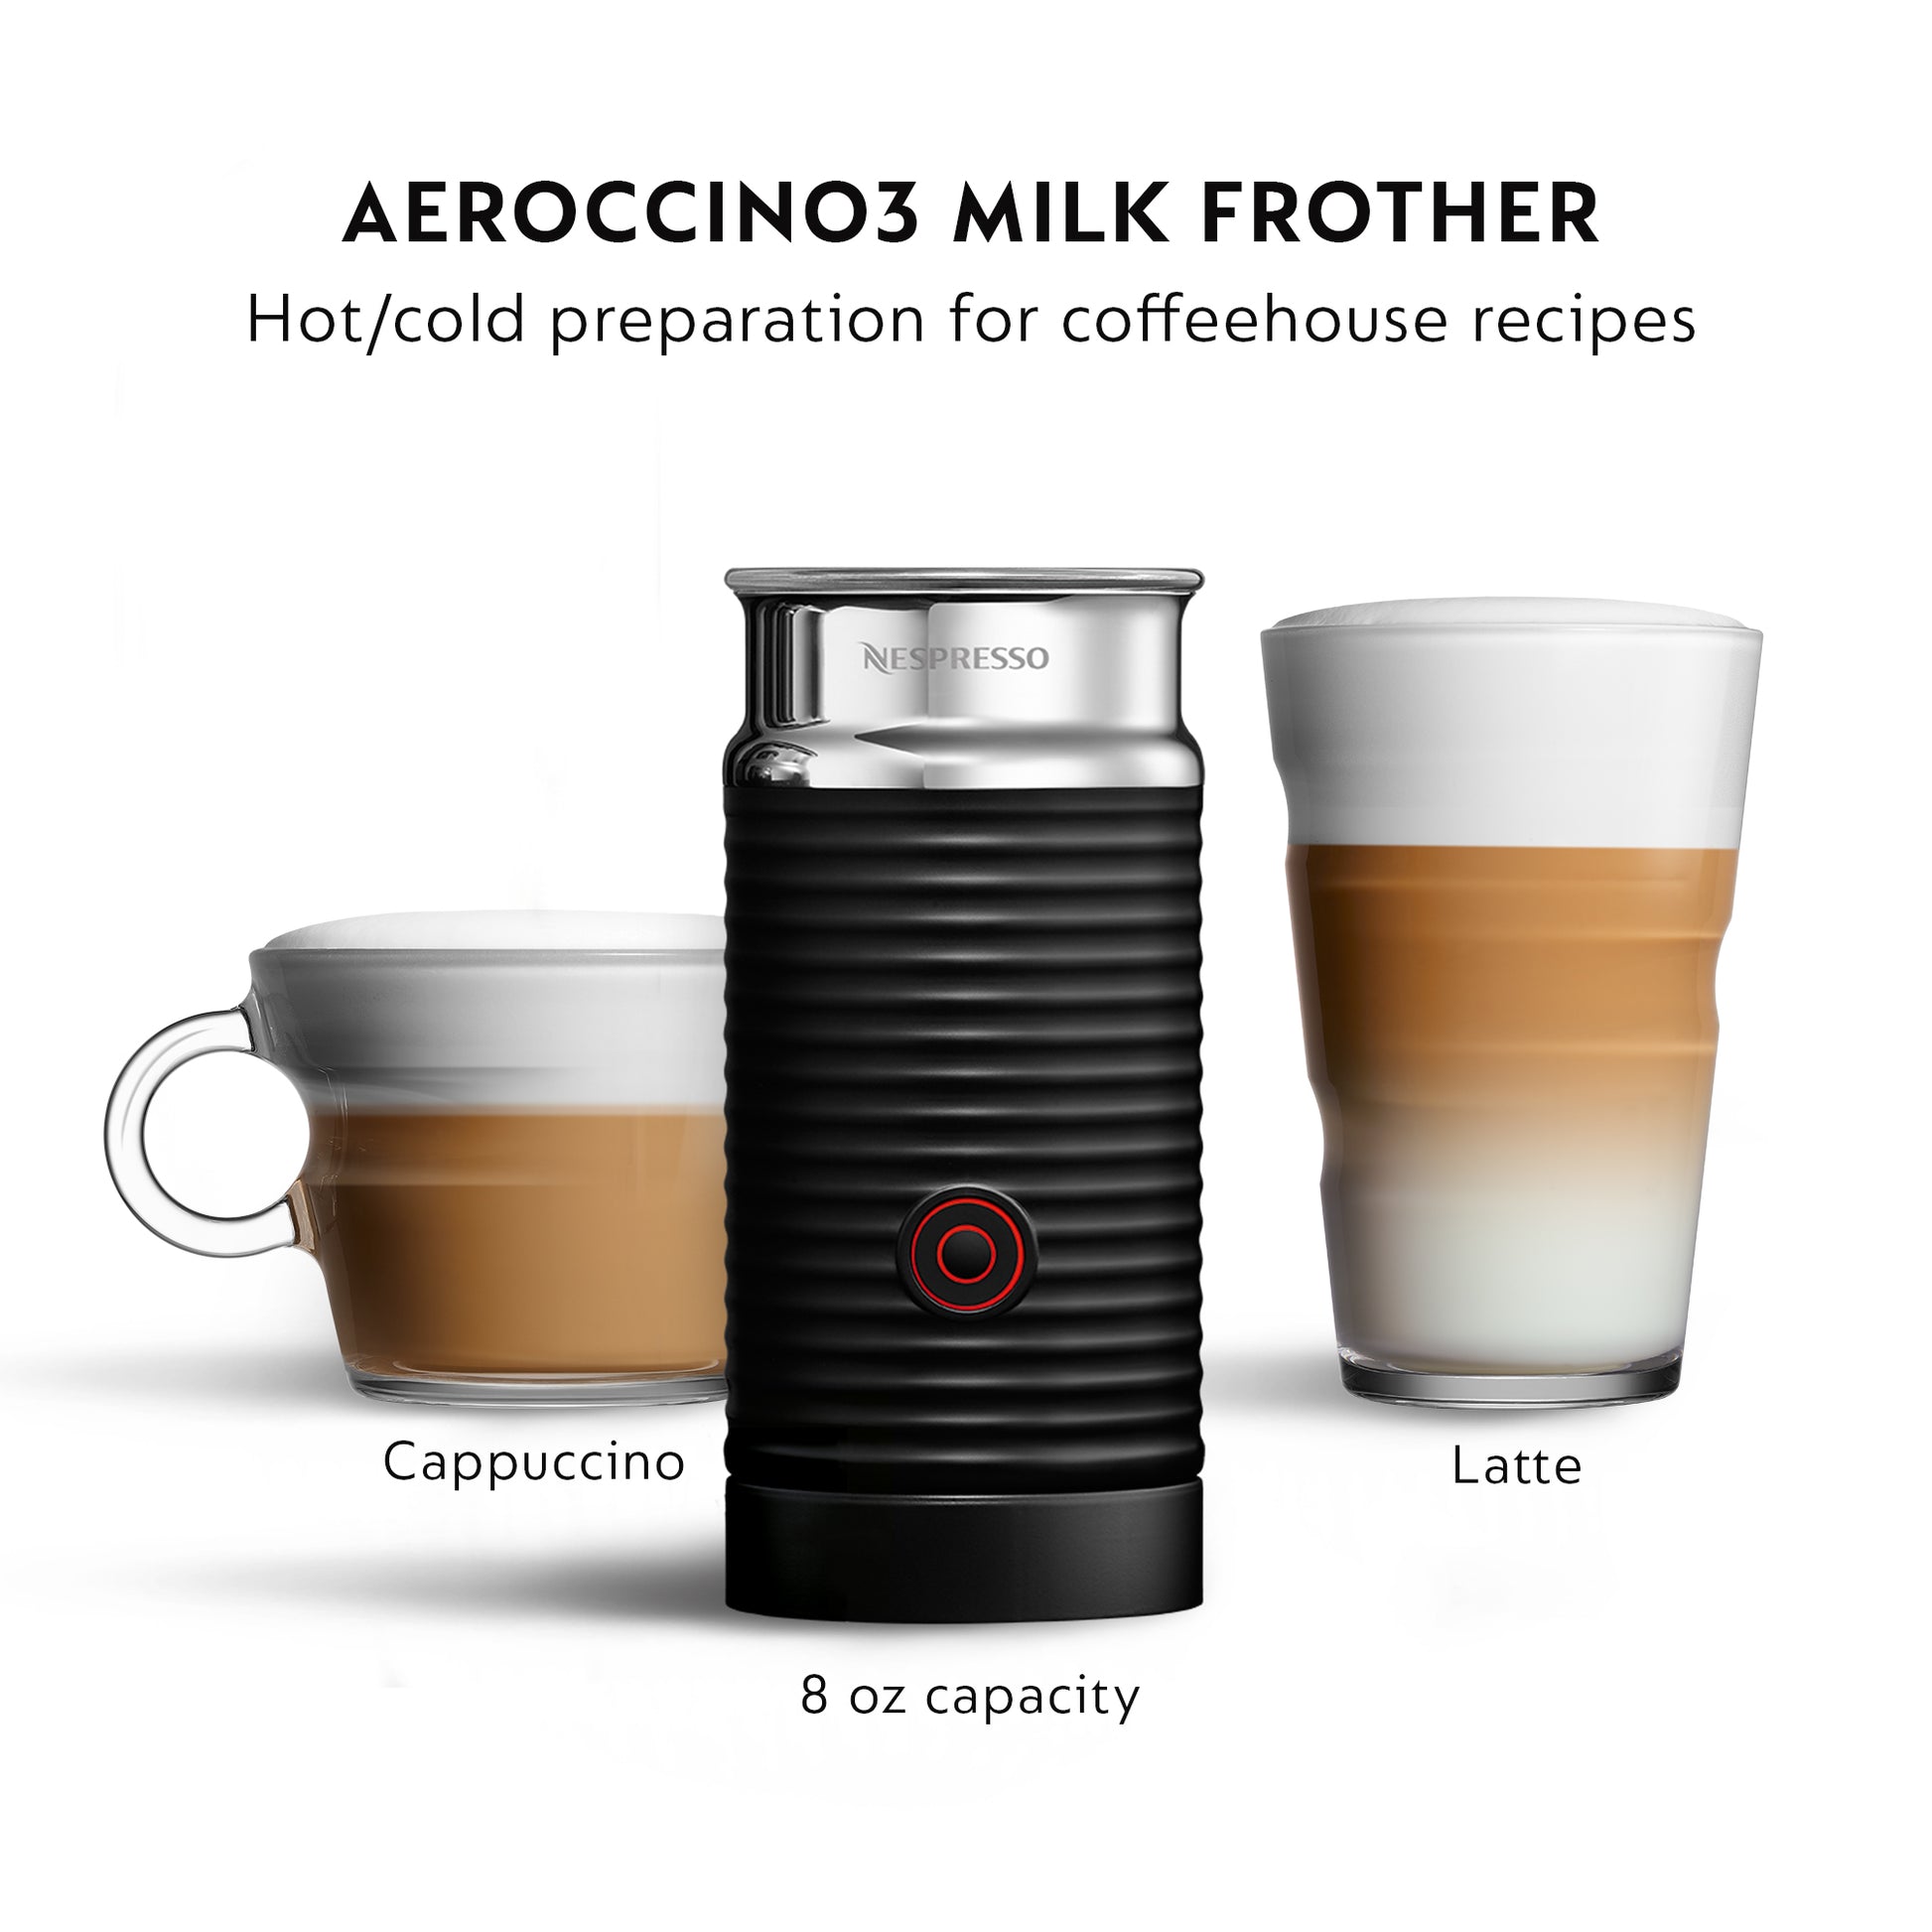 Aeroccino 3 White, Nespresso Milk Frother